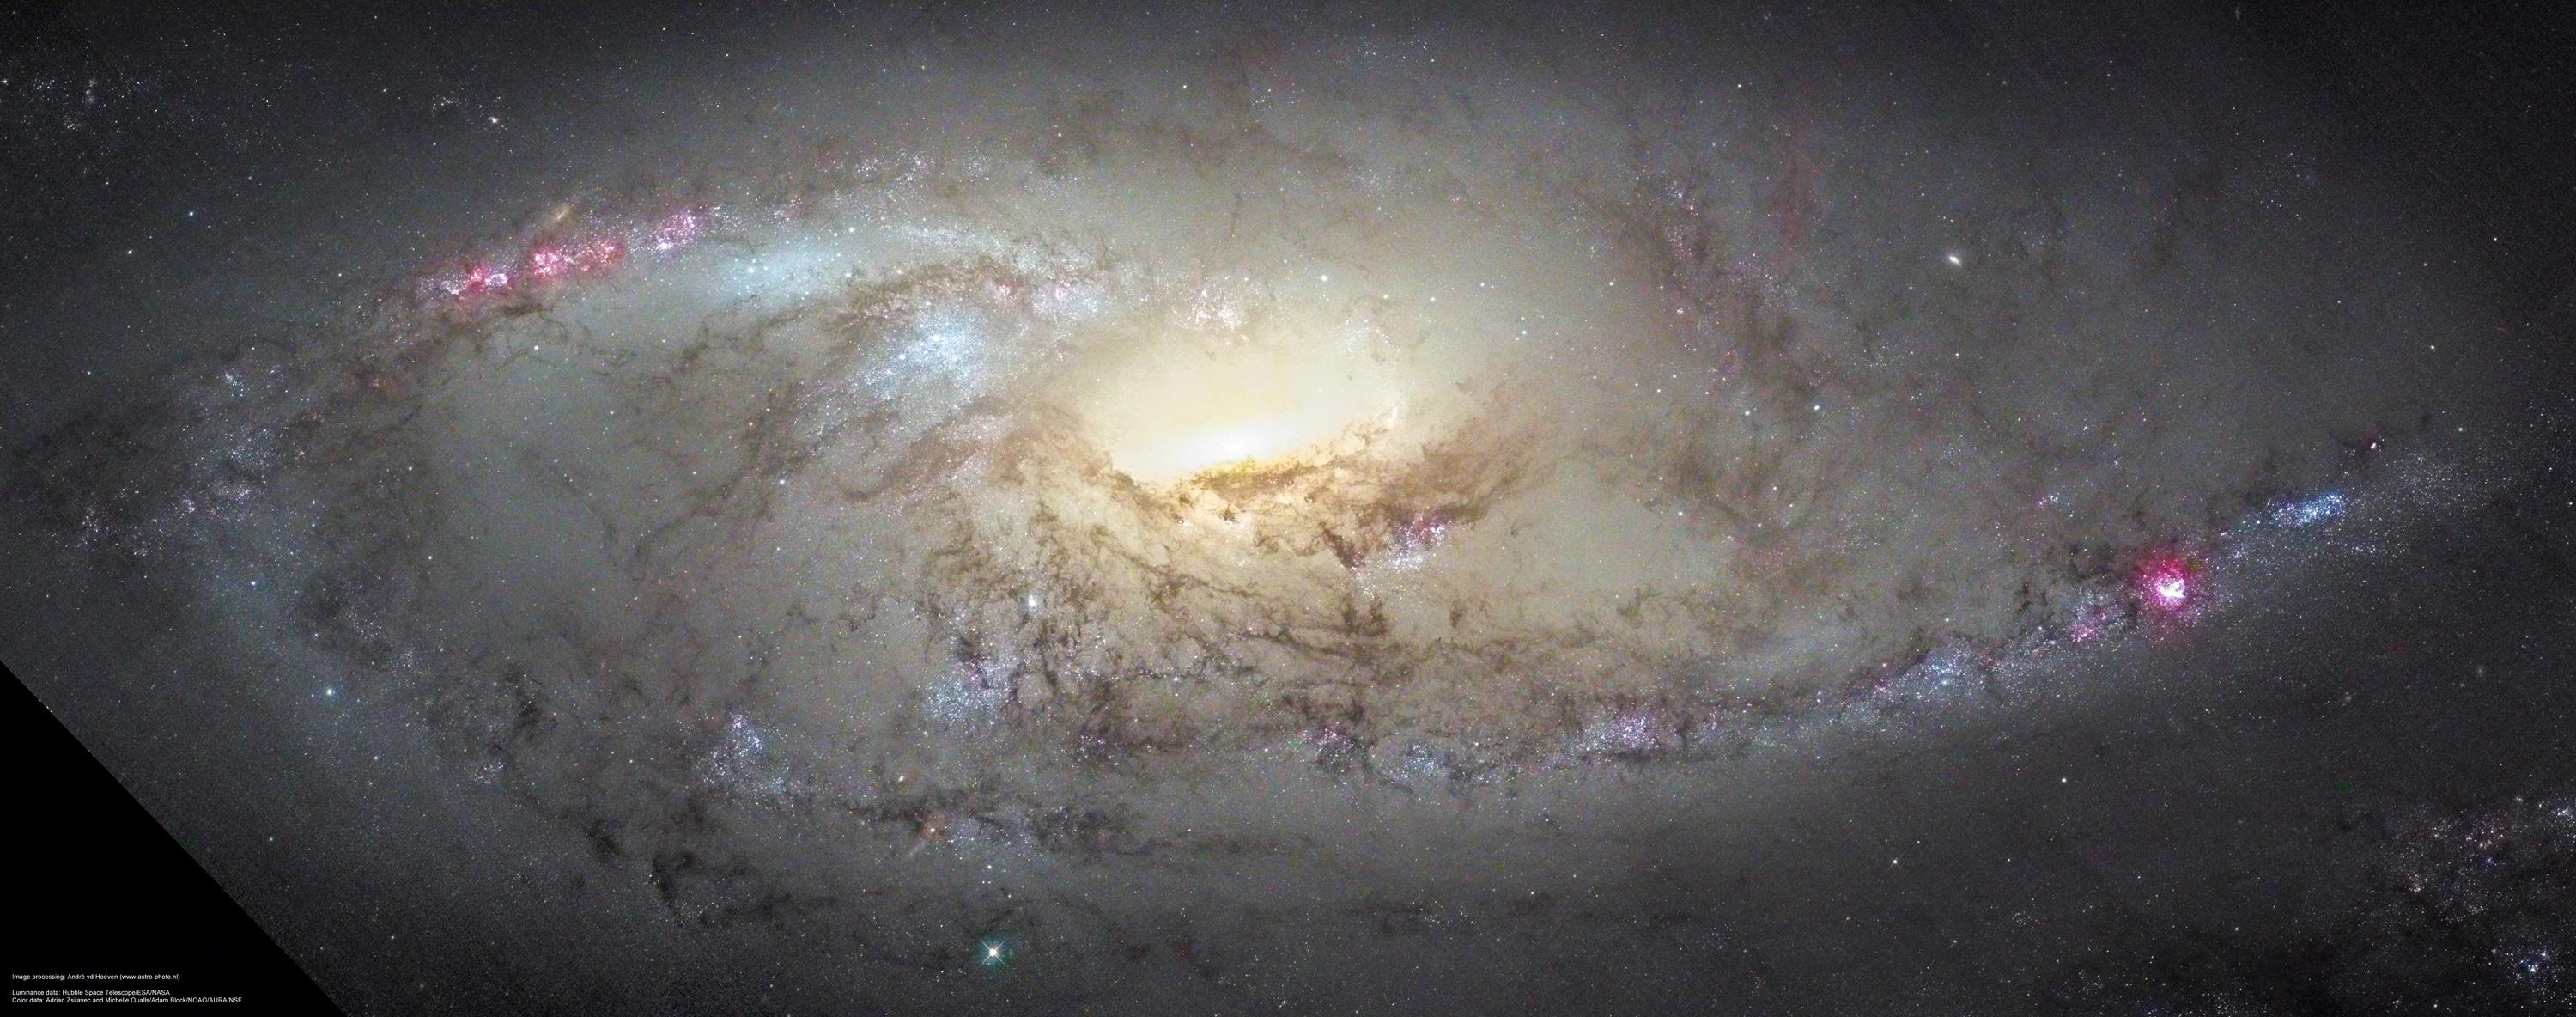 La galaxia espiral M106